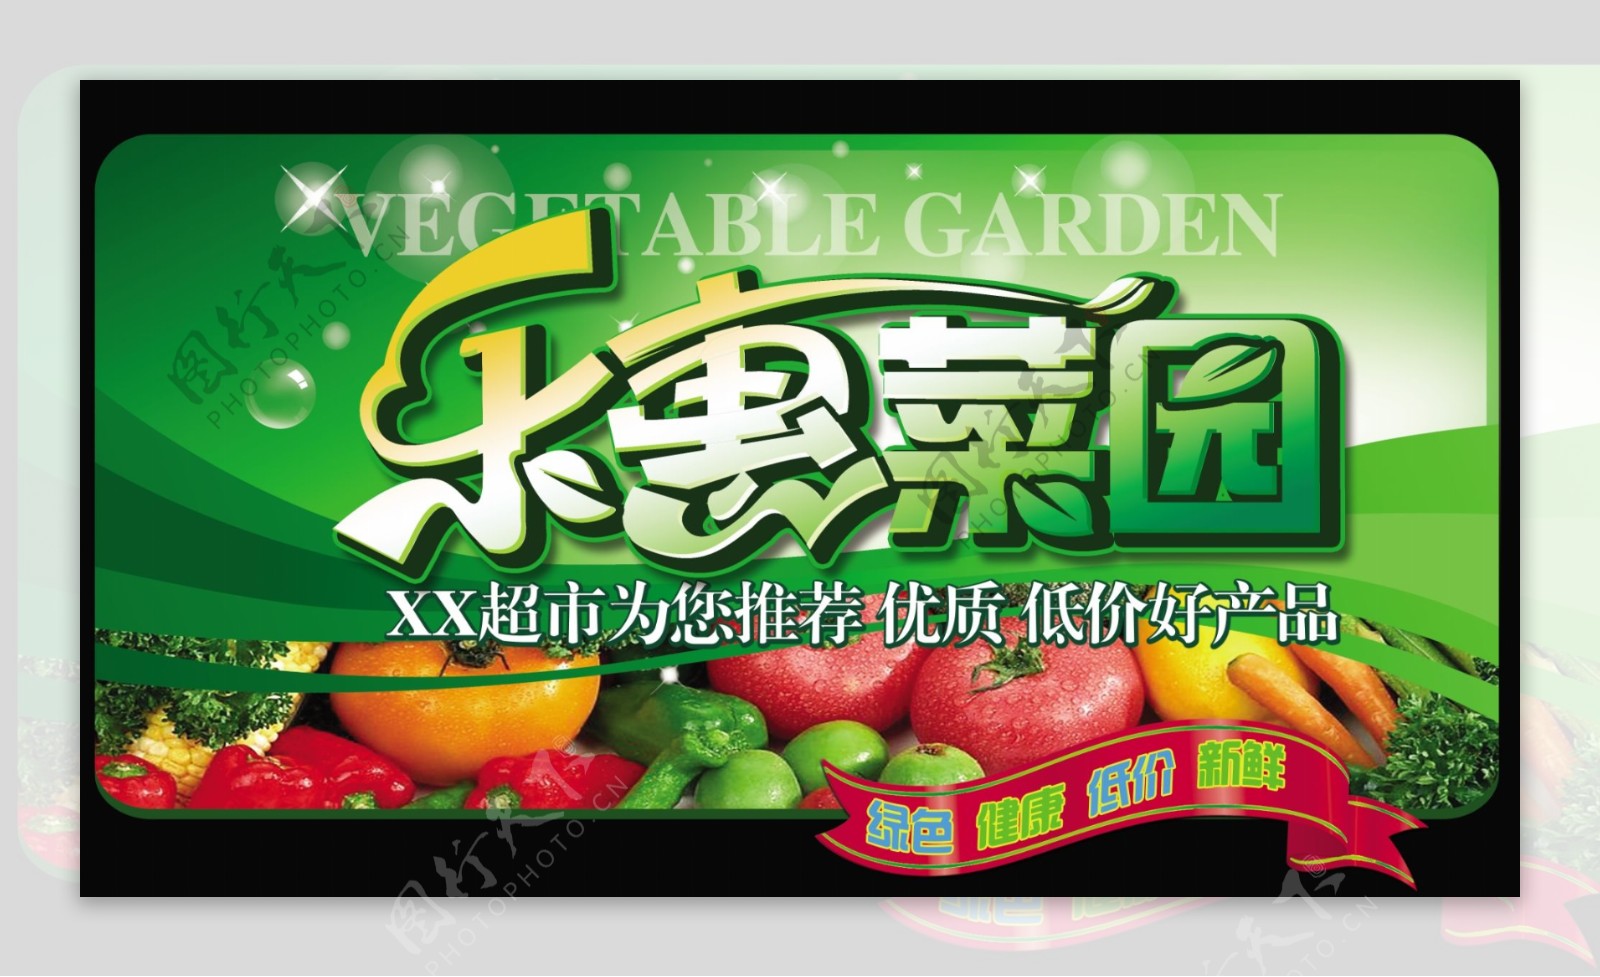 蔬菜促销海报